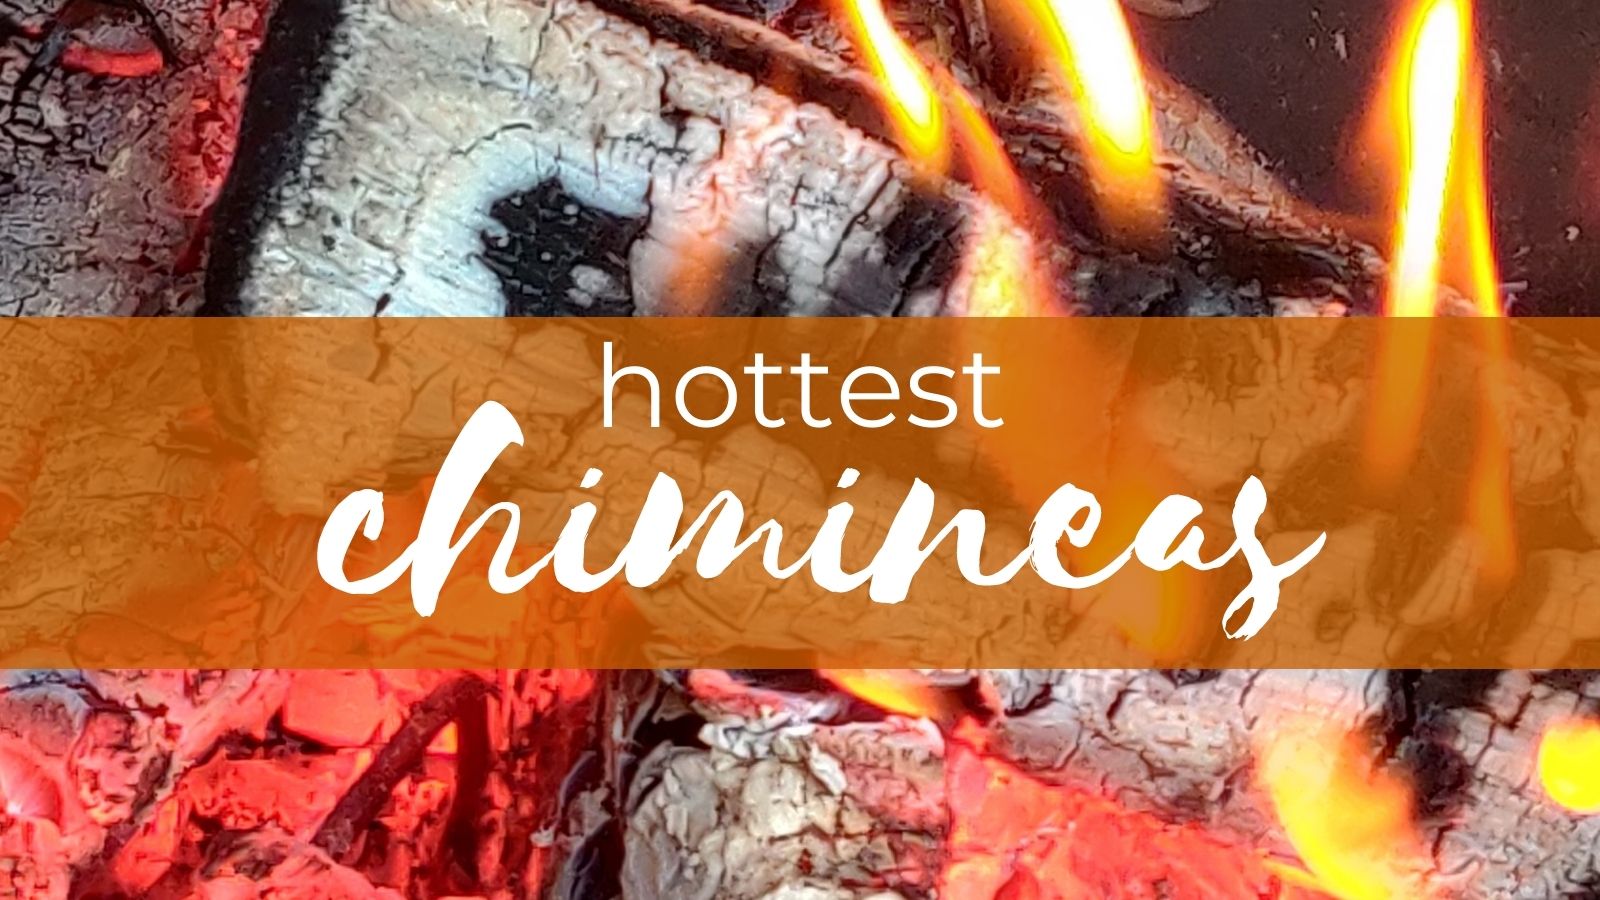 hottest chiminea